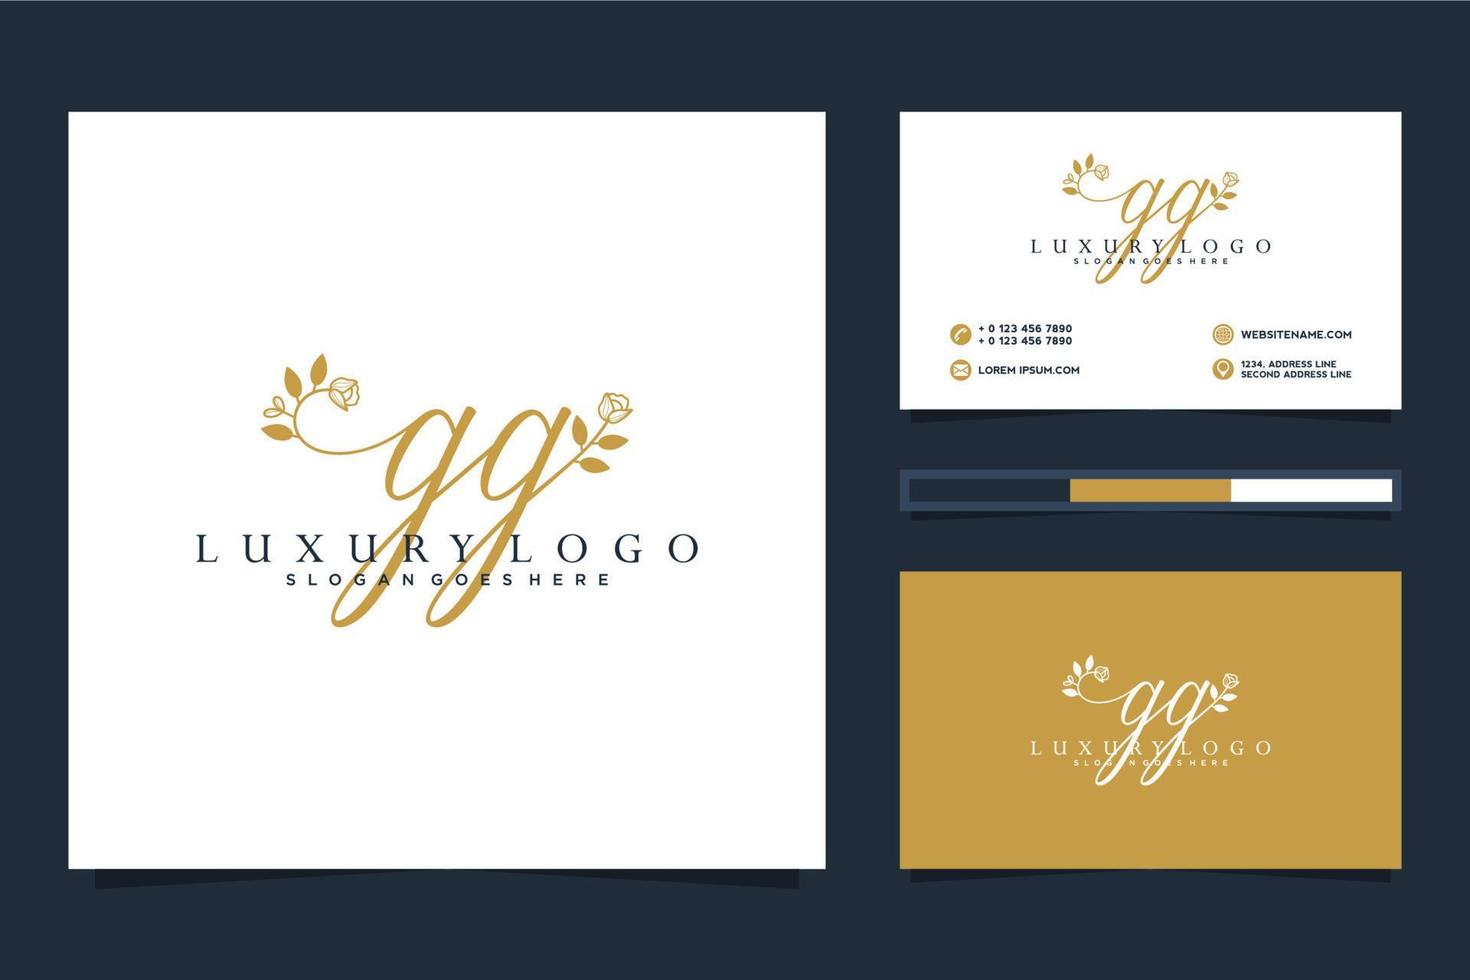 colecciones iniciales de logotipo femenino gg y vector premium de plantilla de tarjeta de visita